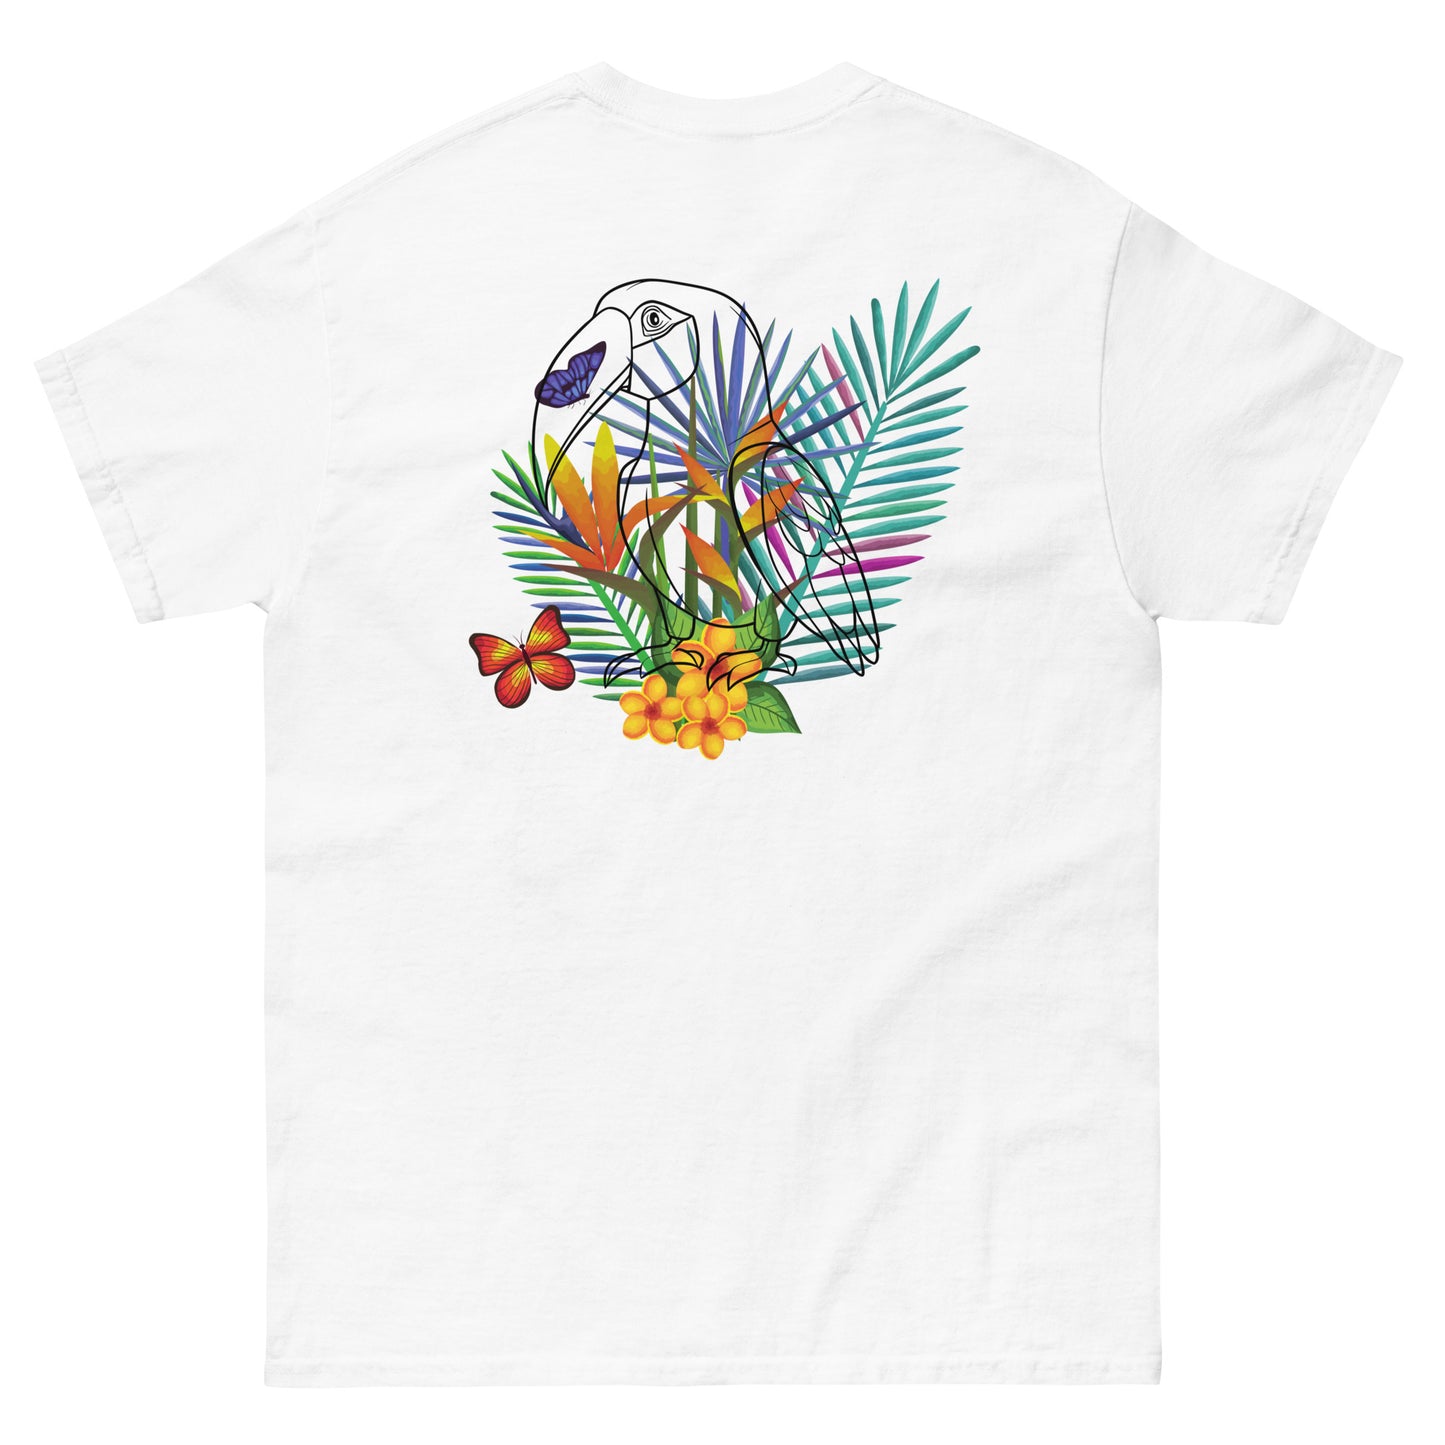 Camiseta de Hombre con Motivos Tropicales